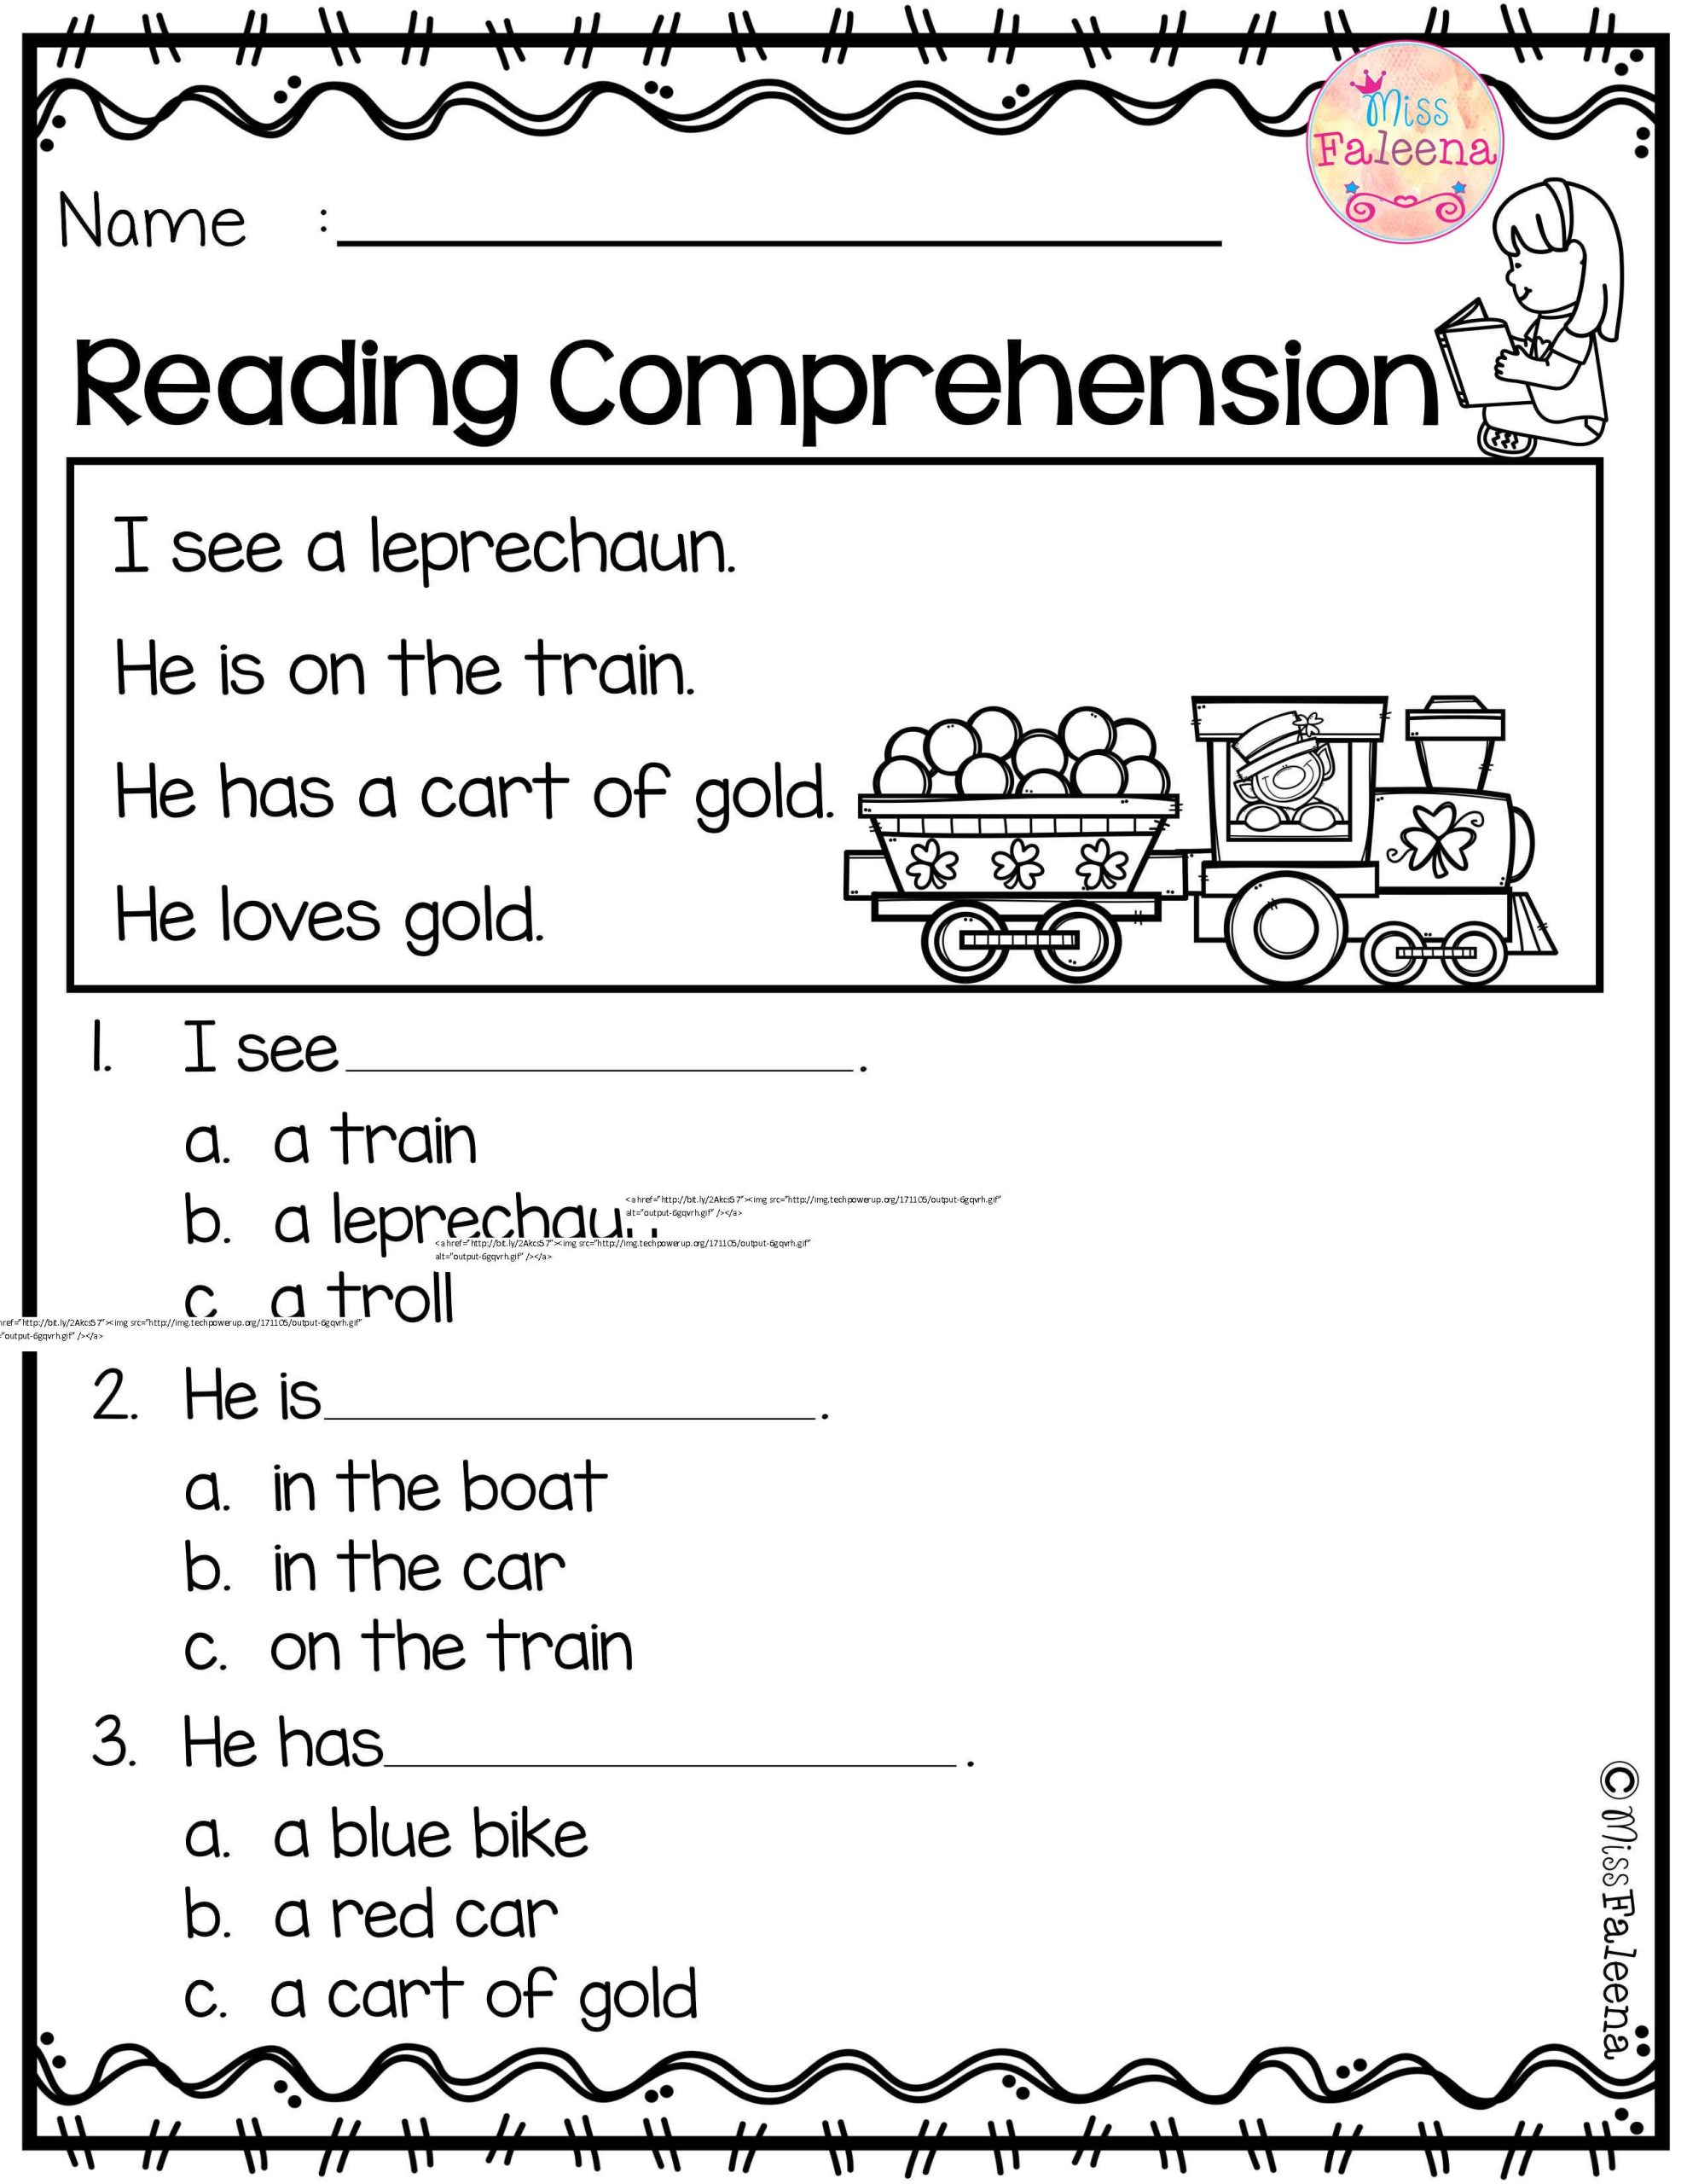 Reading Comprehension Worksheets For Kindergarten